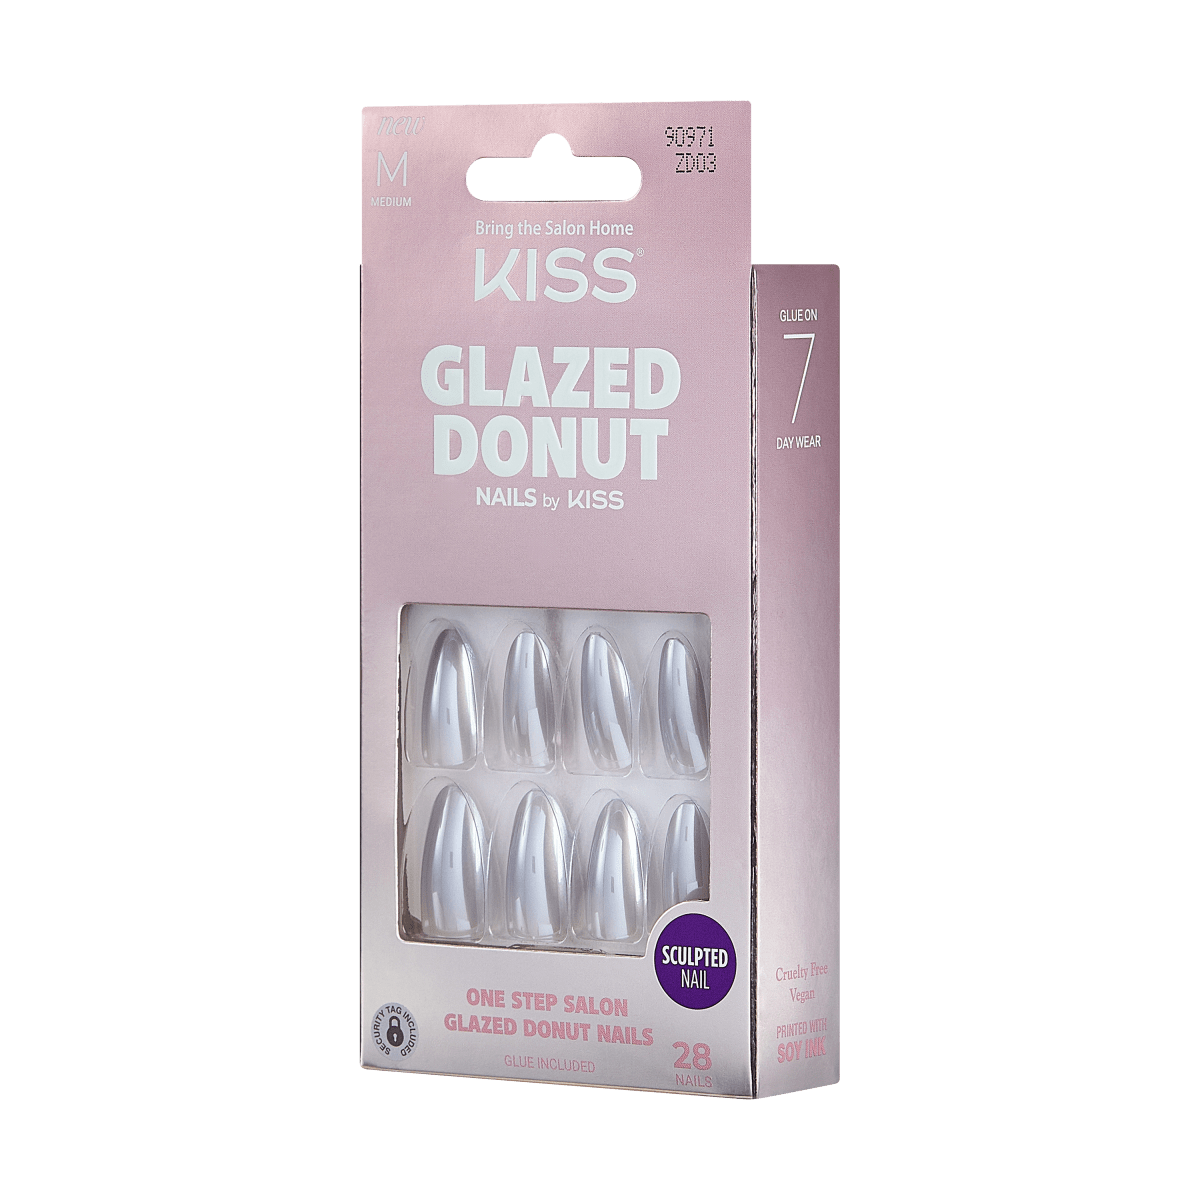 KISS Glazed Donut Nails - Powdered